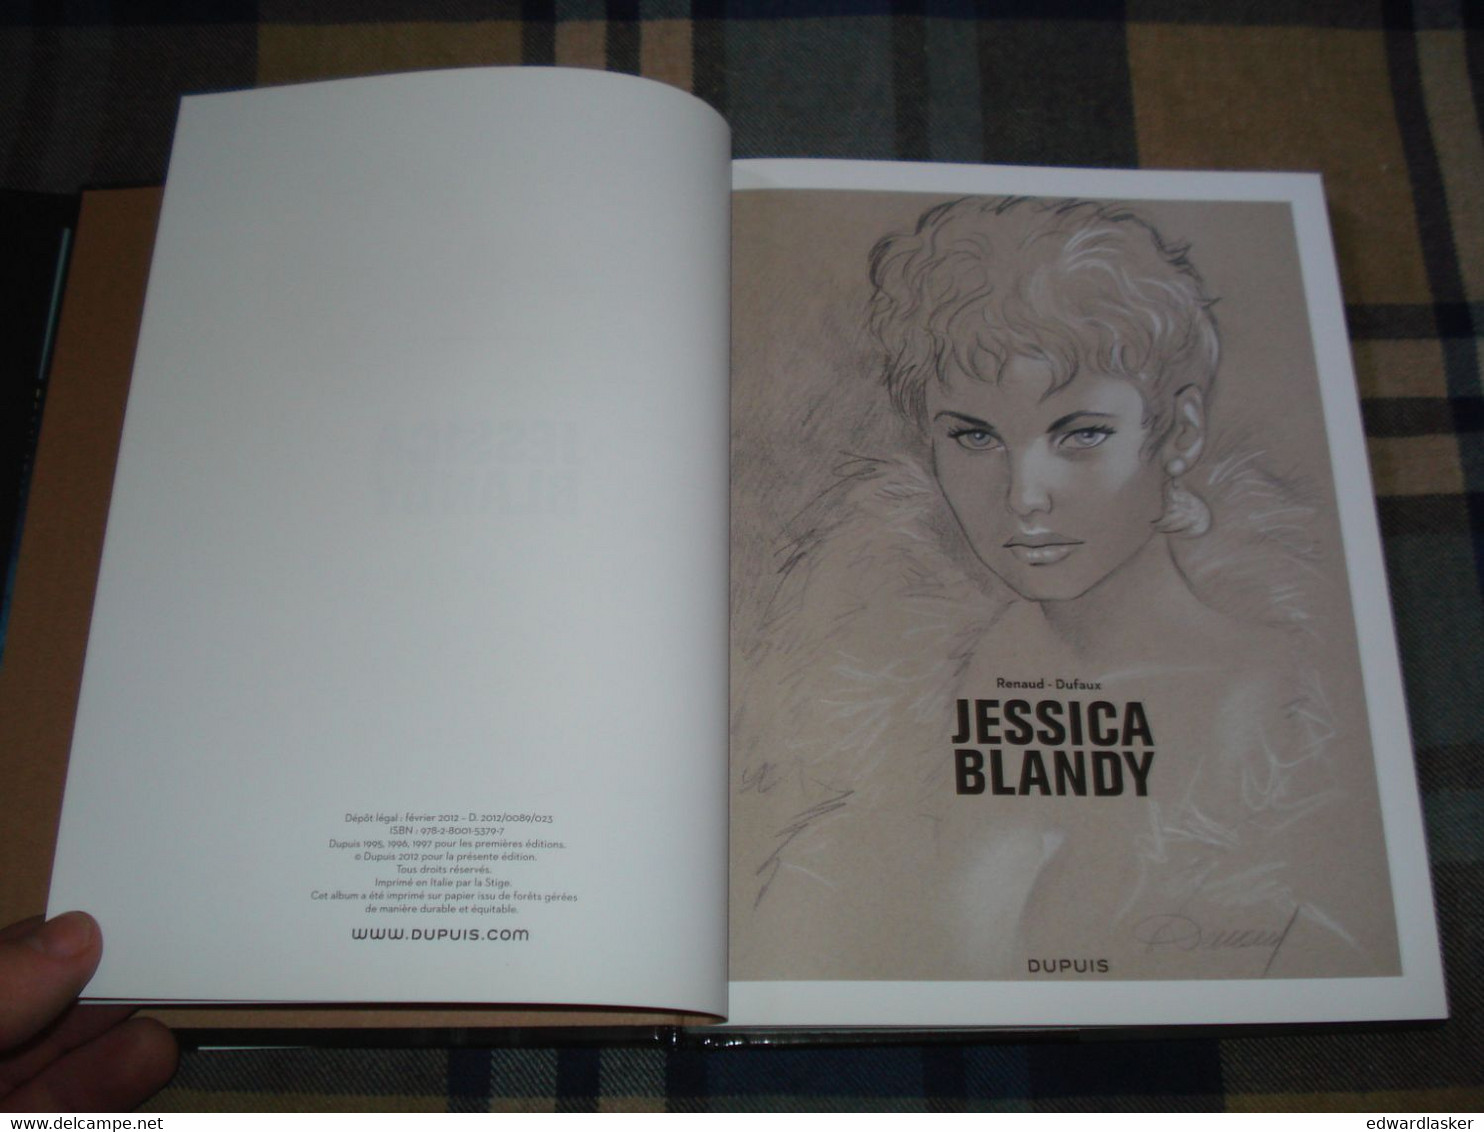 JESSICA BLANDY Intégrale N°4 (11-12-13) - Renaud Dufaux - Dupuis 2012 - Très Bon état - Jessica Blandy